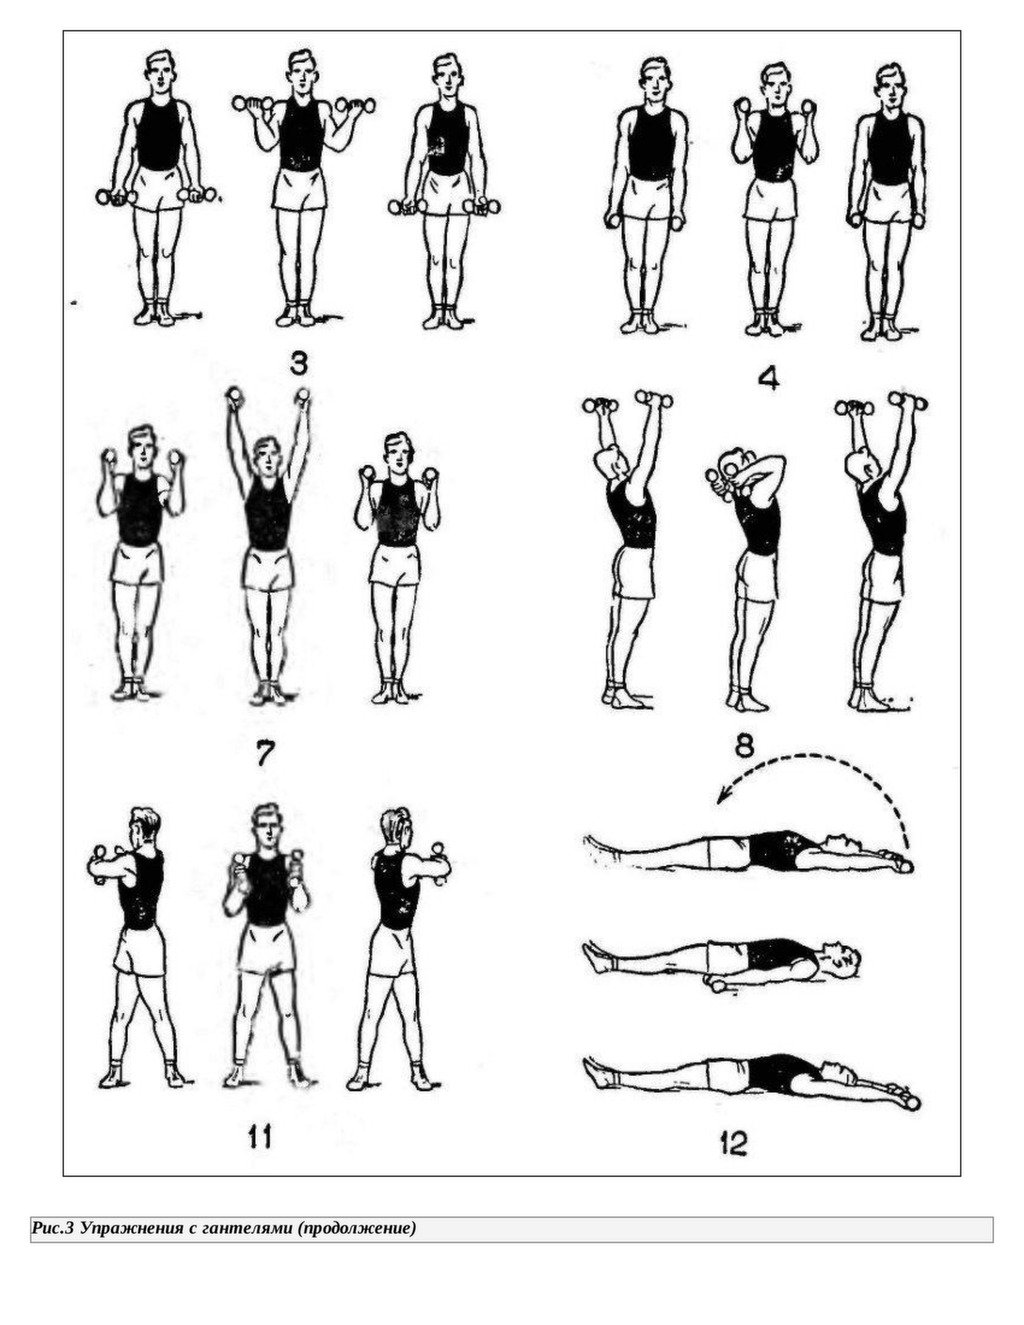 Зарядка с гантелями дома. Комплекс упражнений с гантельками. Комплекс упражнений с гантелями (10-12 упражнений). Комплекс упражнений для рук с гантелями. Упражнения с гантельками для женщин.